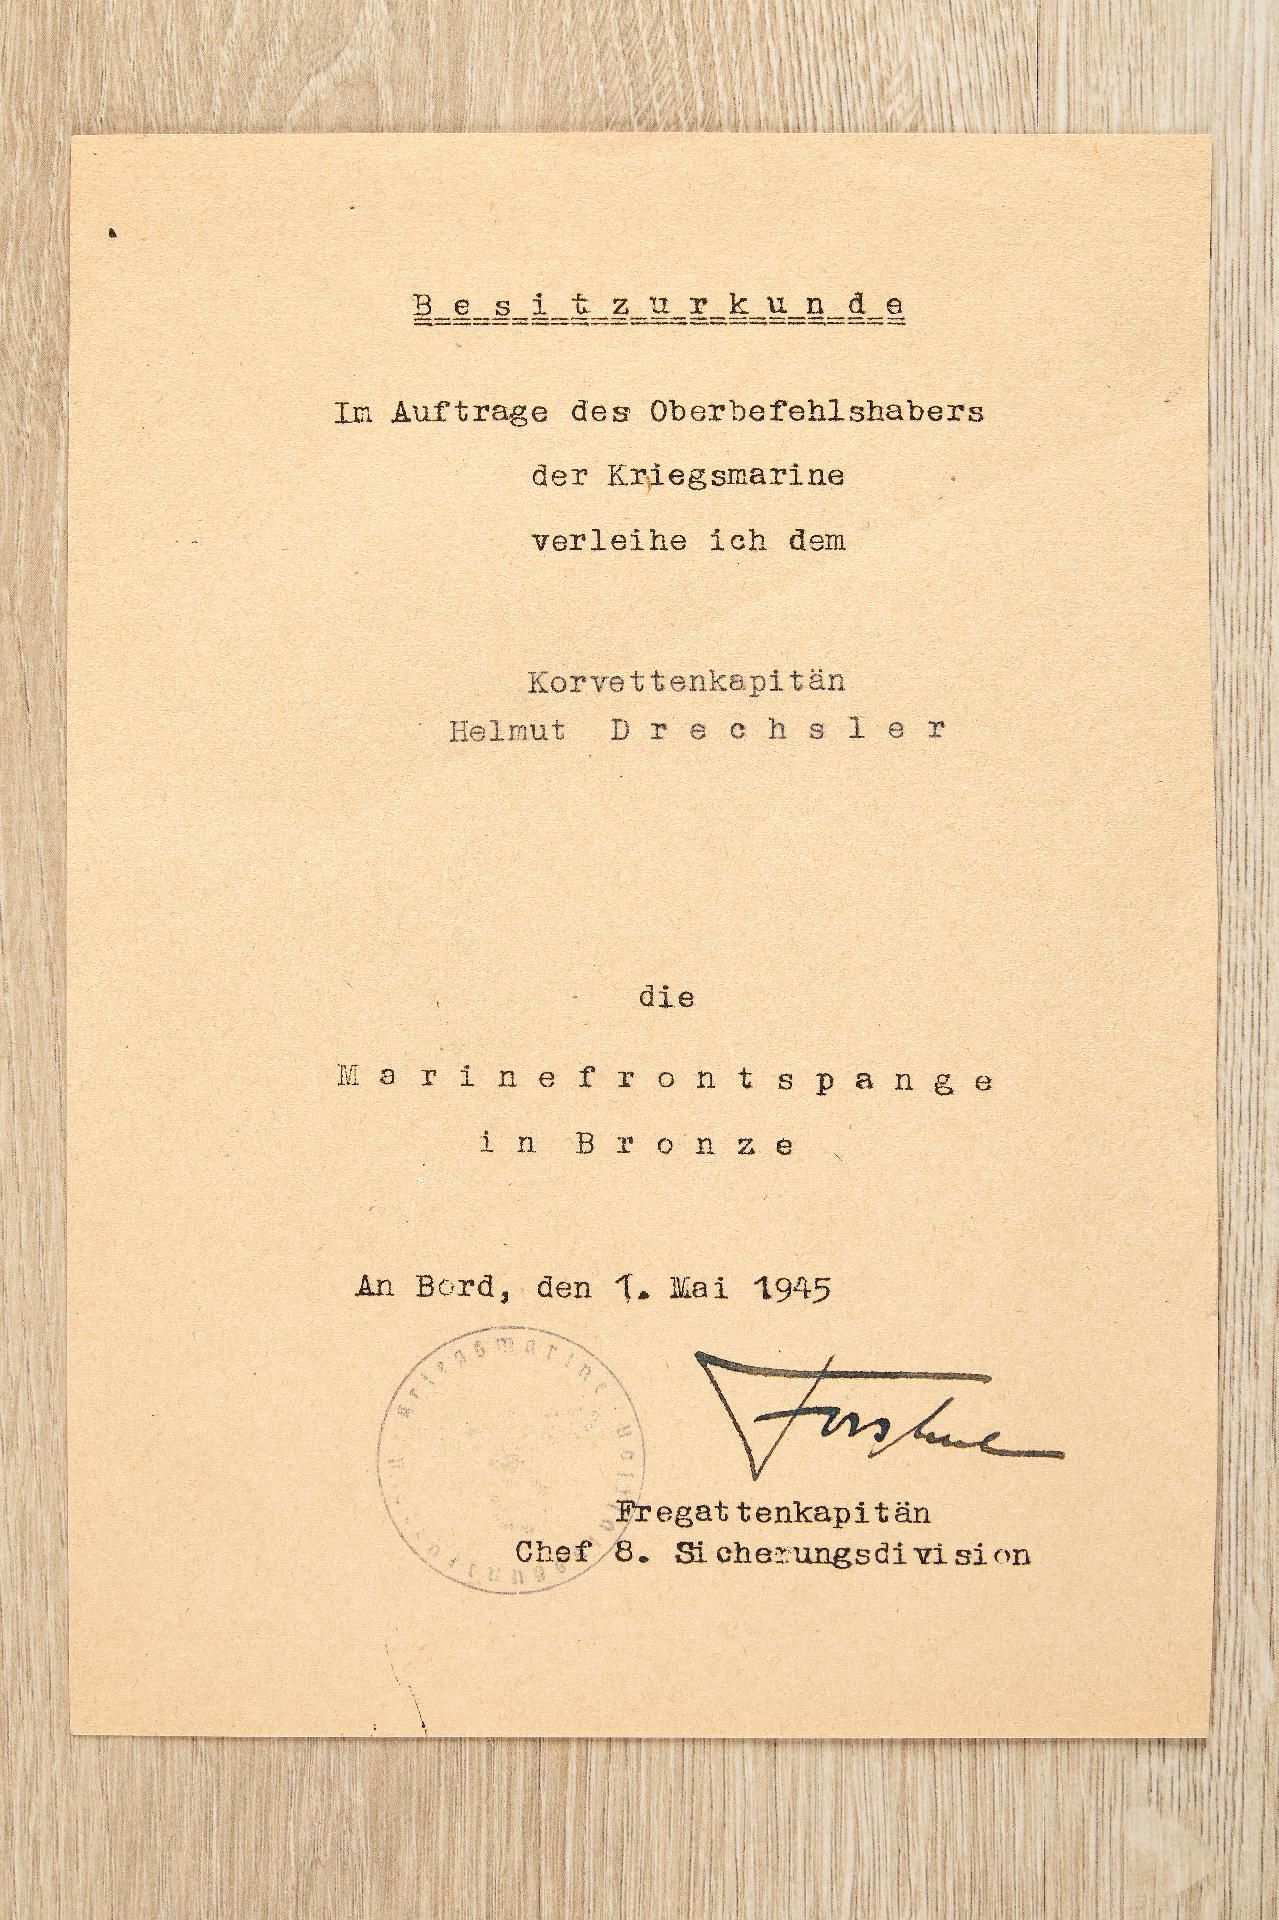 Kriegsmarine : Auszeichnungs- und Dokumentennachlass des Korvettenkapitäns Helmut Drechsler - Image 8 of 28